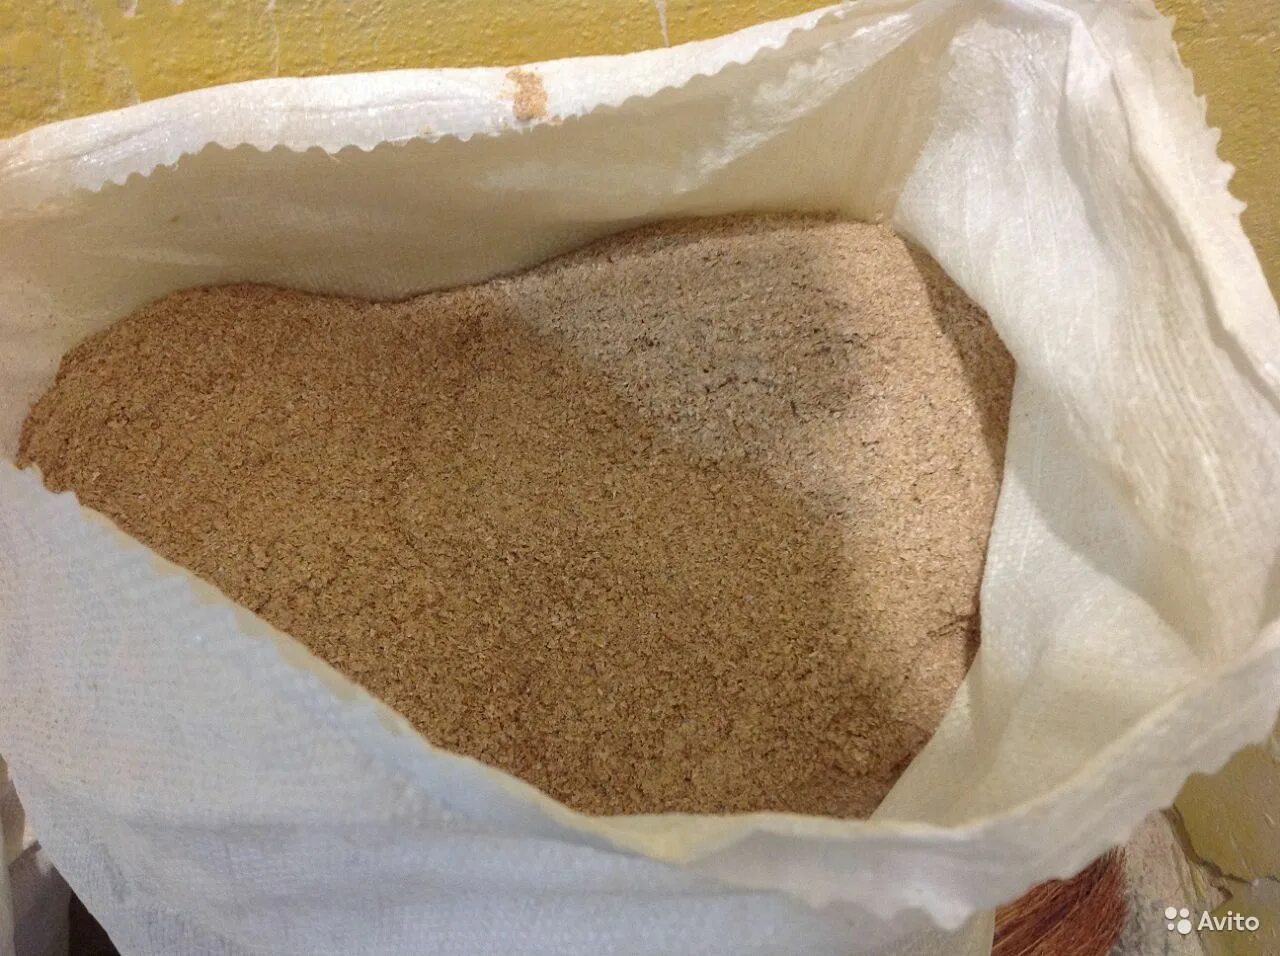 Отруби пшеничные, мешок (25 кг). Отруби пшеничные кормовые для животных. Отруби пшеничные мешки 50 кг. Меласса сухая кормовая. Отруби пшеничные оптом